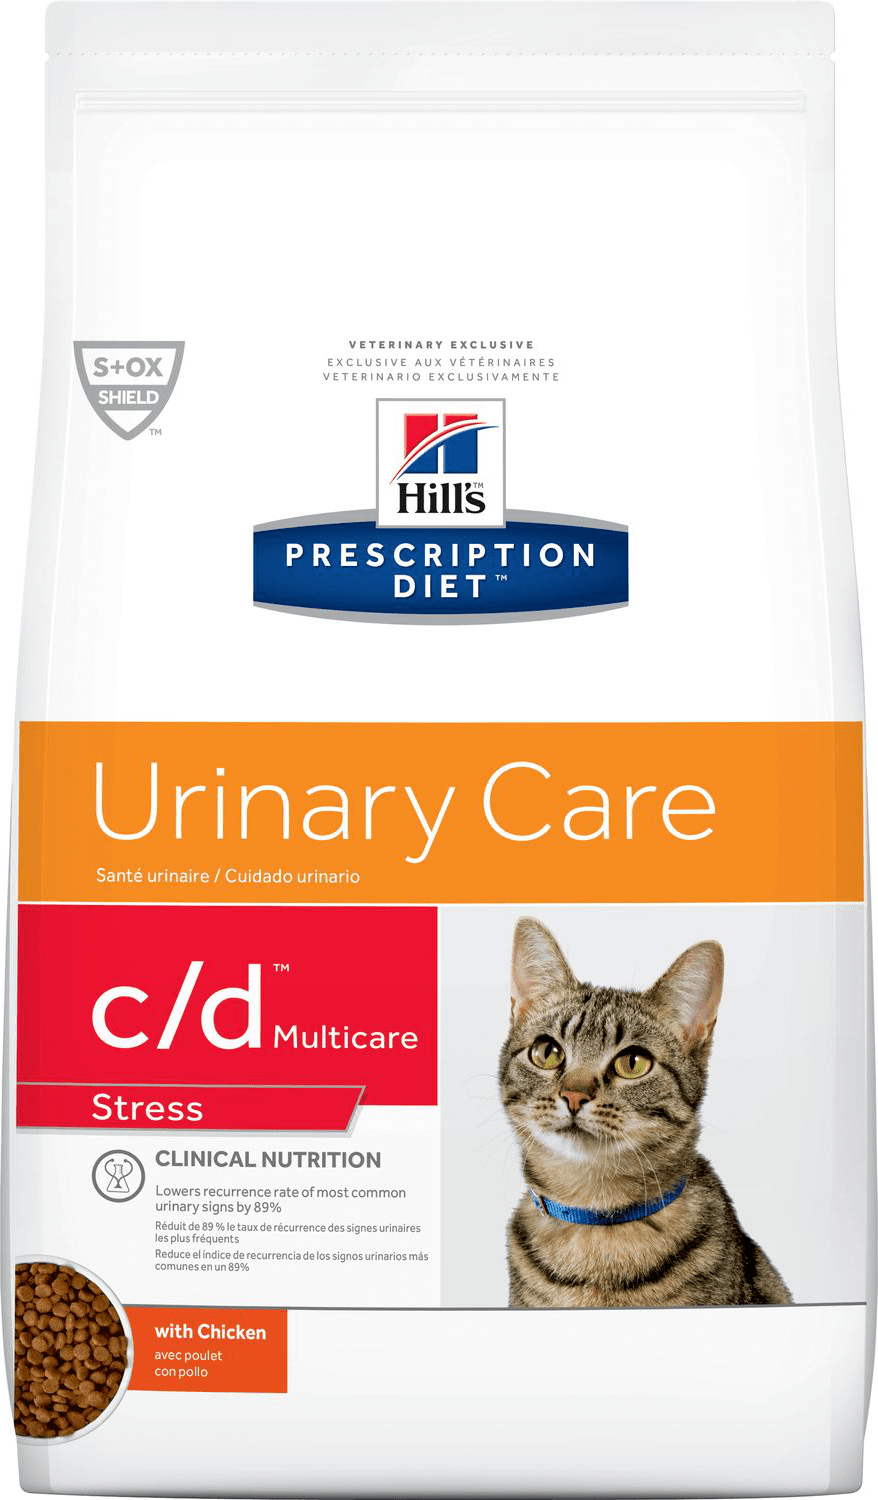 Hill's Prescription Diet C-d Multicare Stress (Dry)